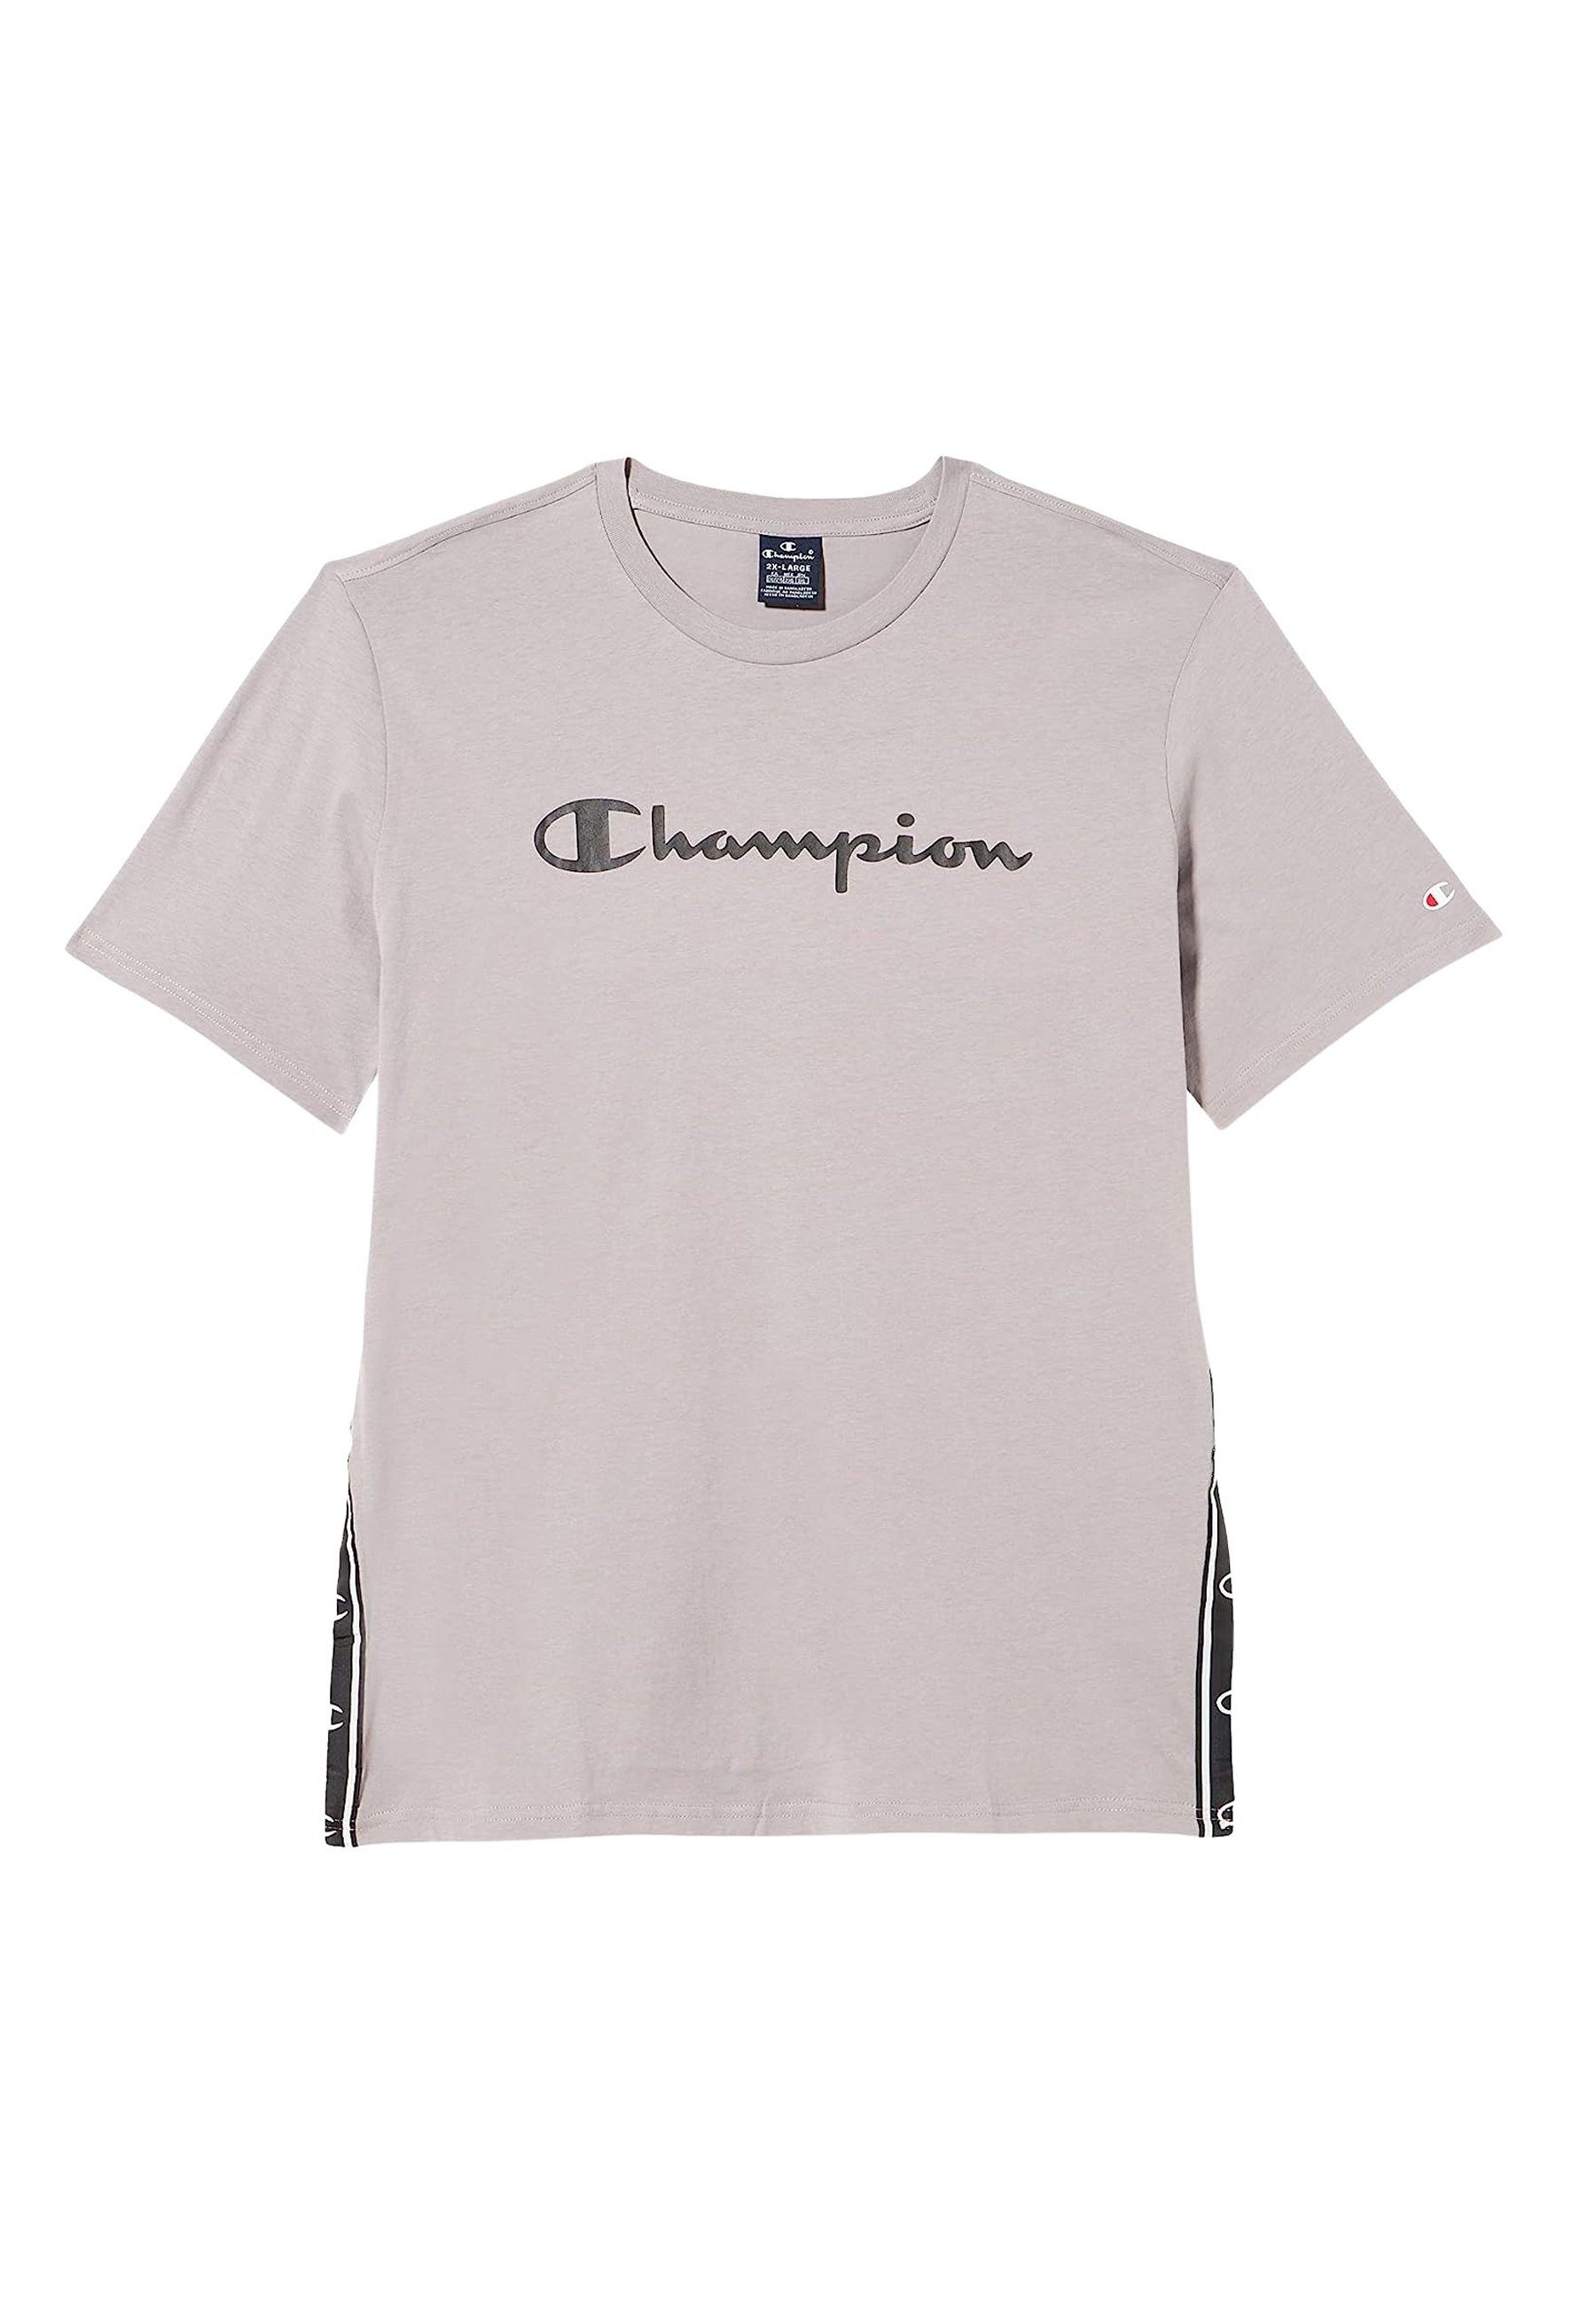 Champion T-Shirt Shirt Baumwoll-T-Shirt mit seitlichem Logoband und